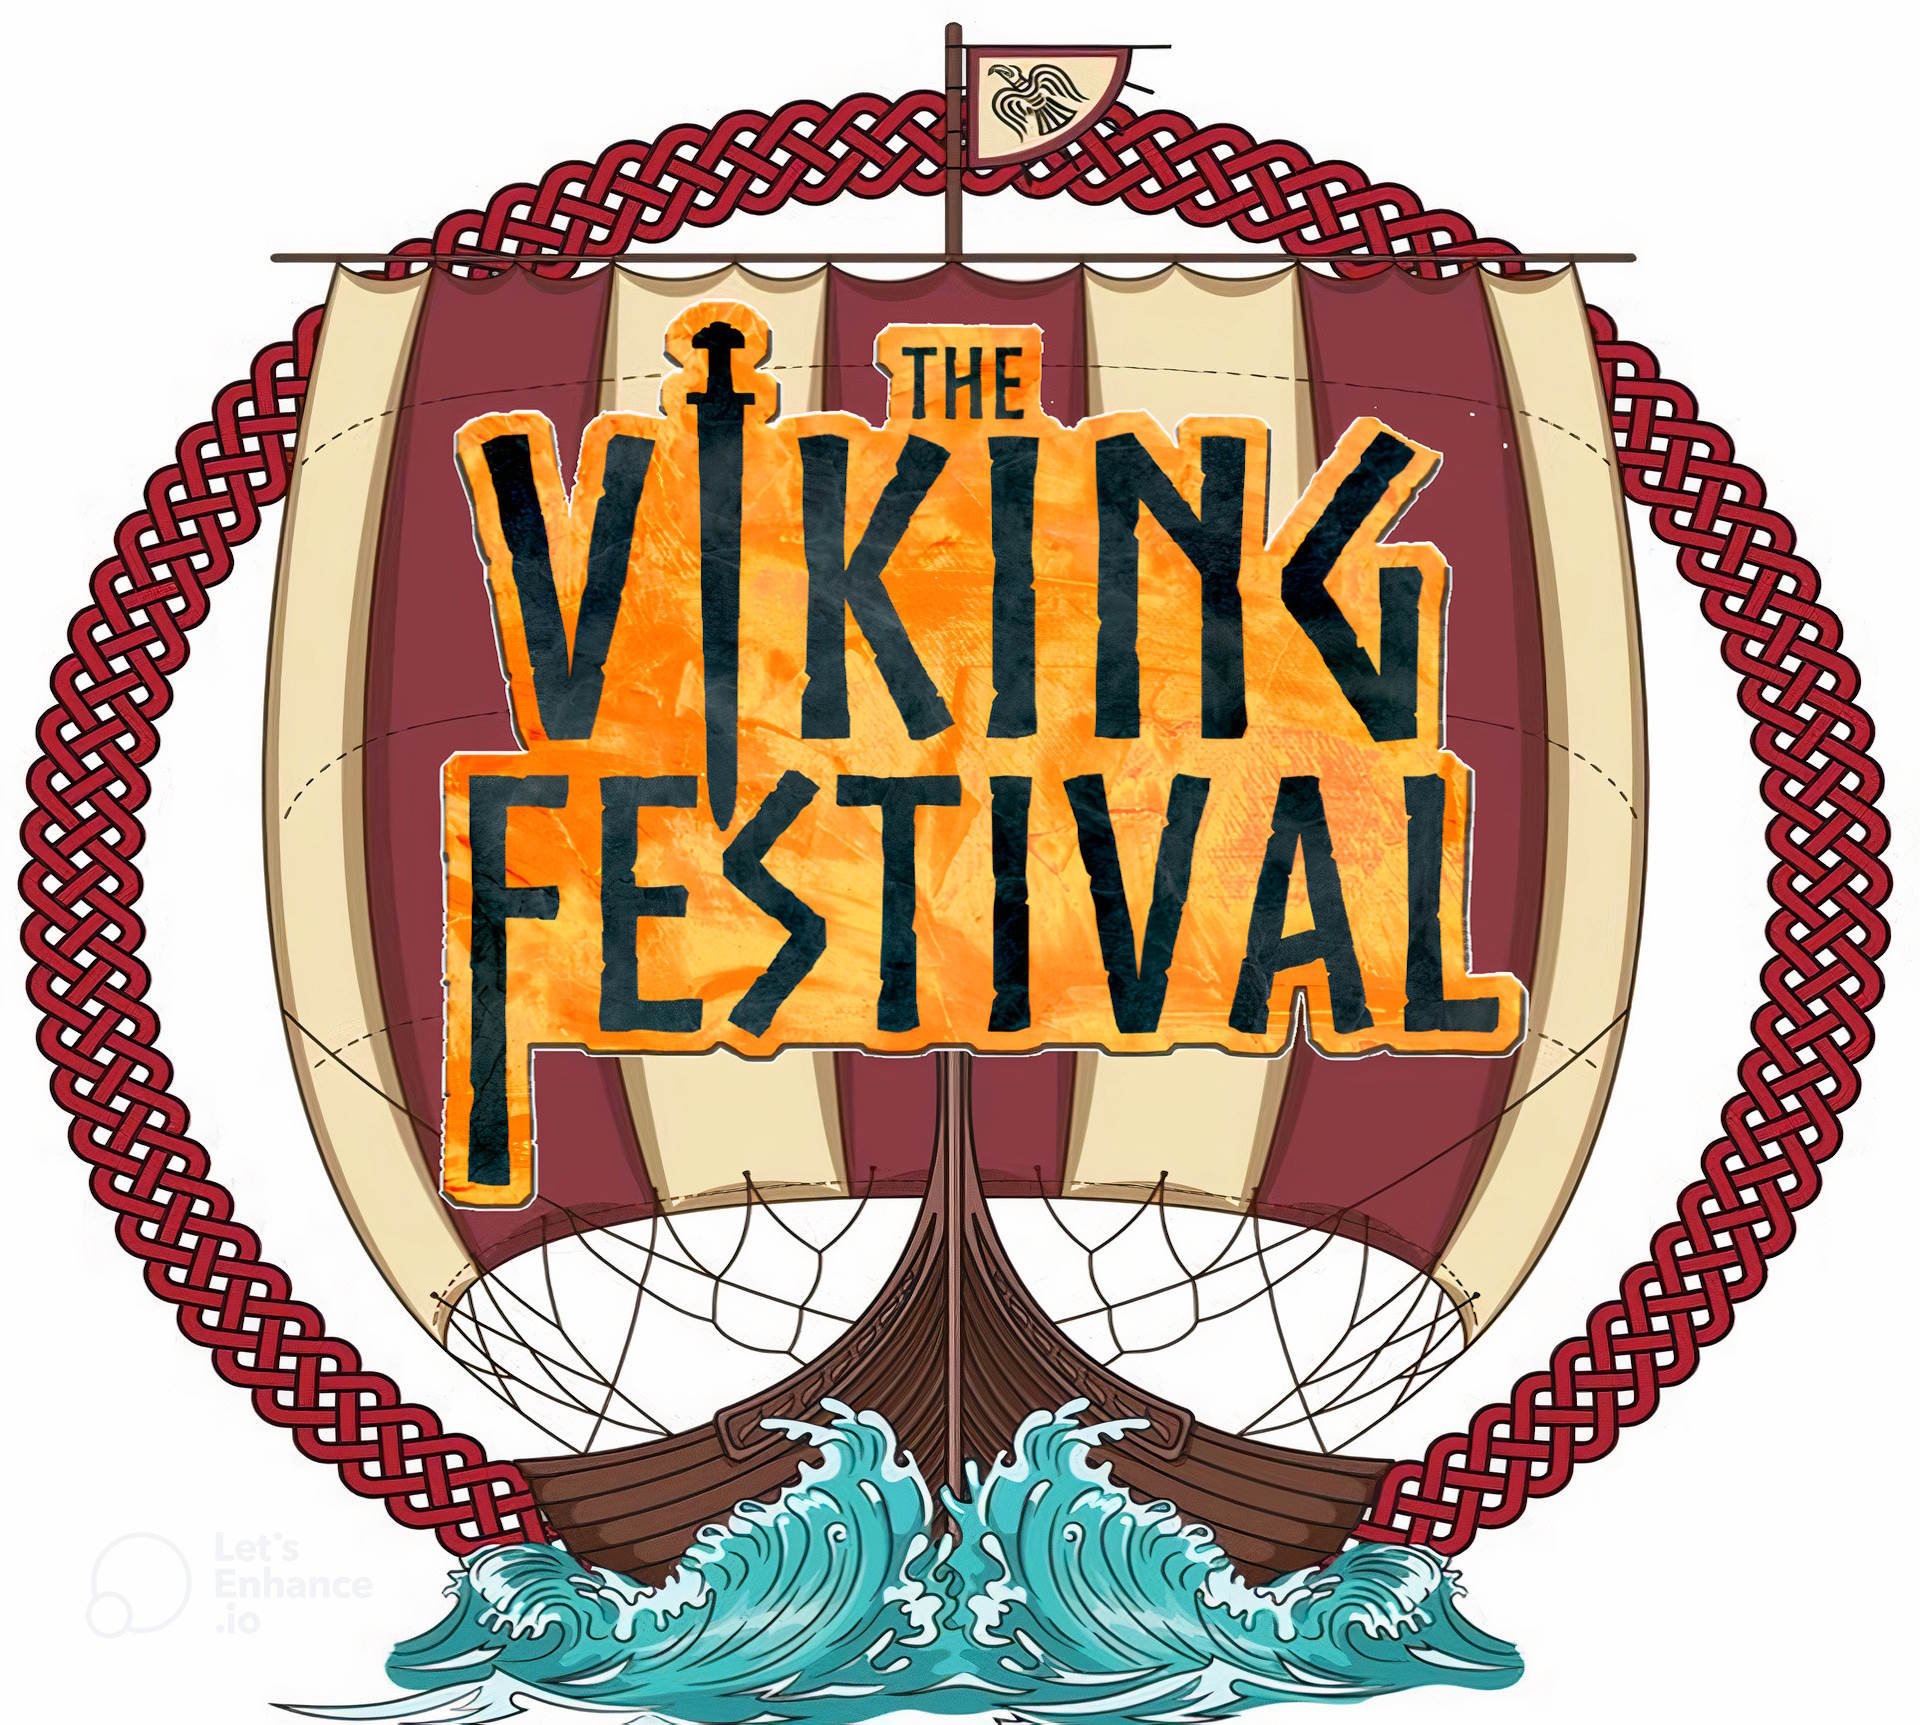 The Arkansas Viking Festival